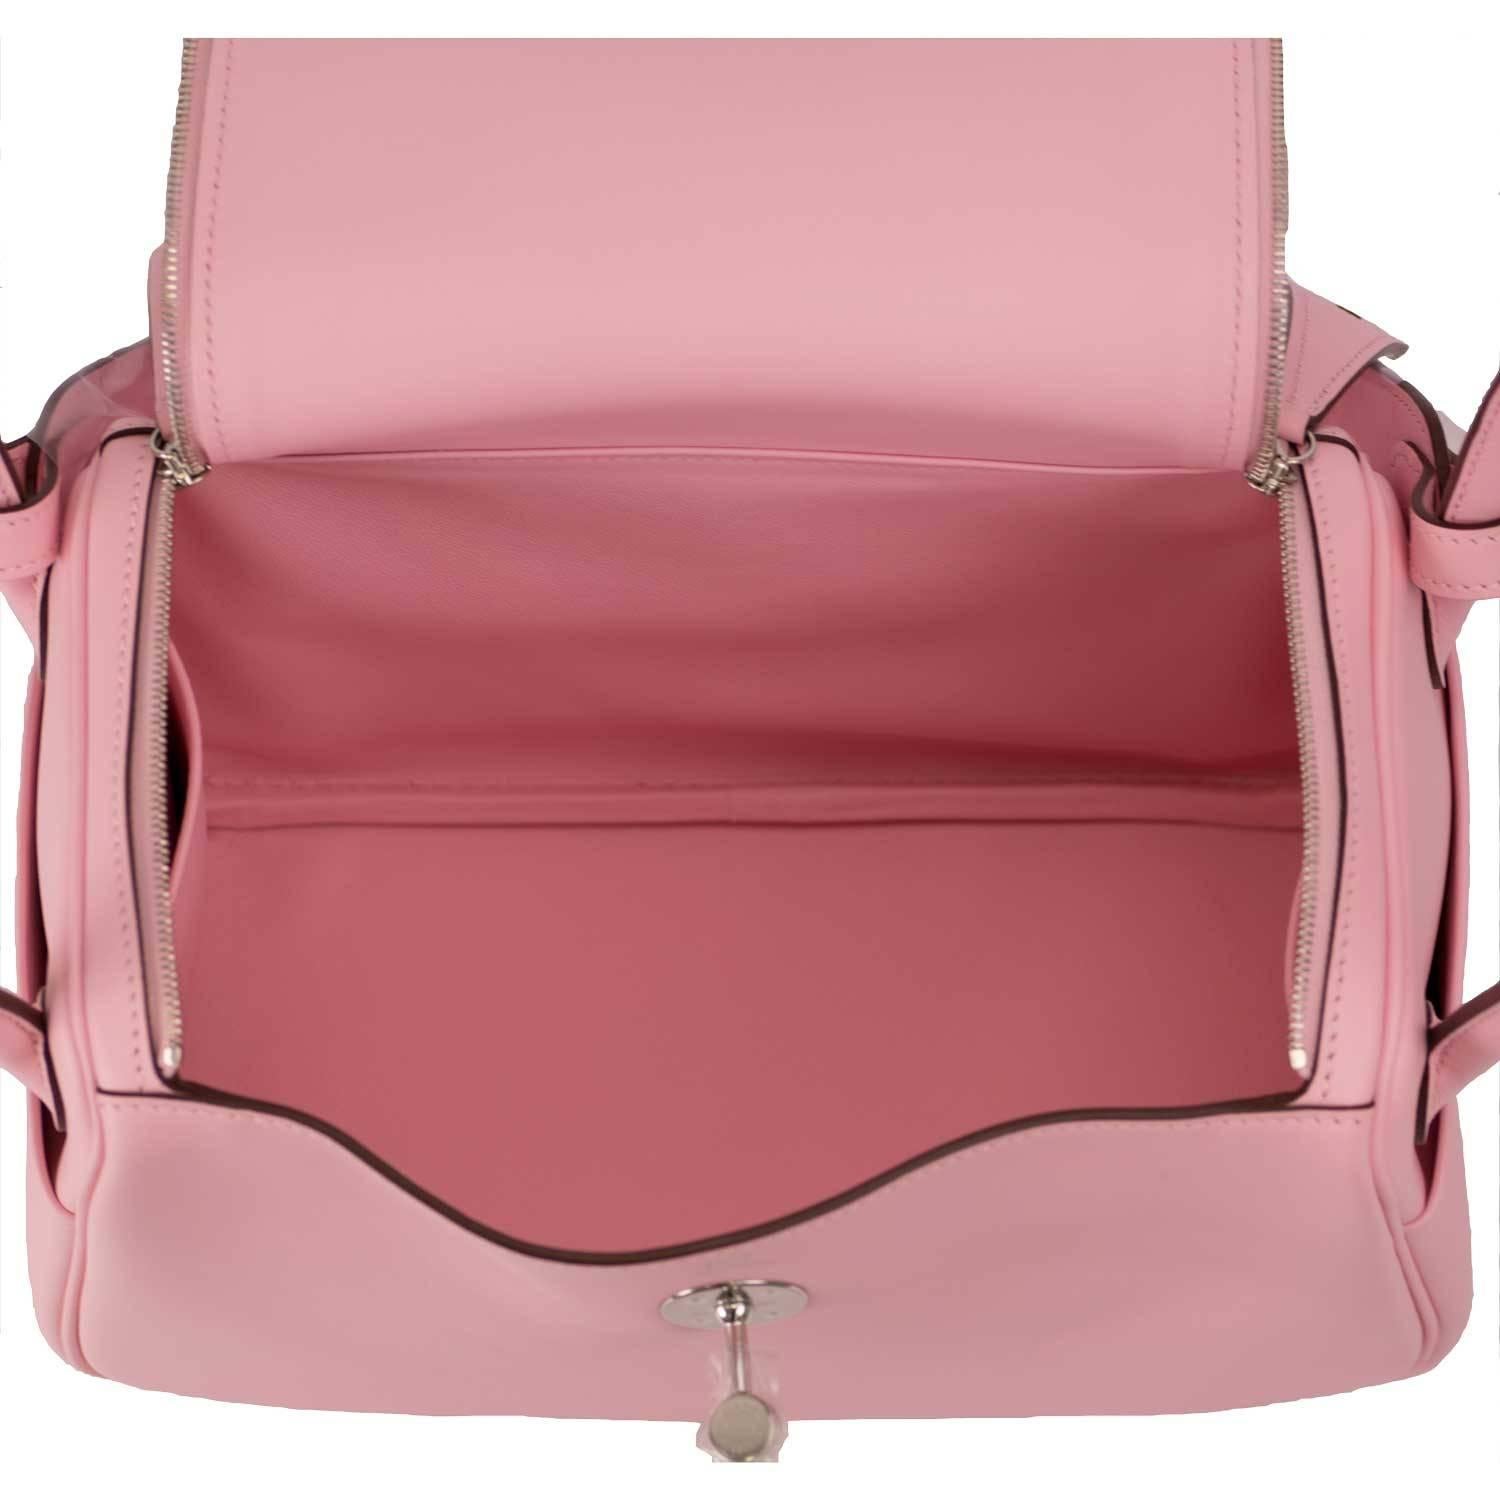 Pink Hermes Handbag Lindy 26 Swift Leather 3Q Rose Sakura Palladium Hardware 2016.